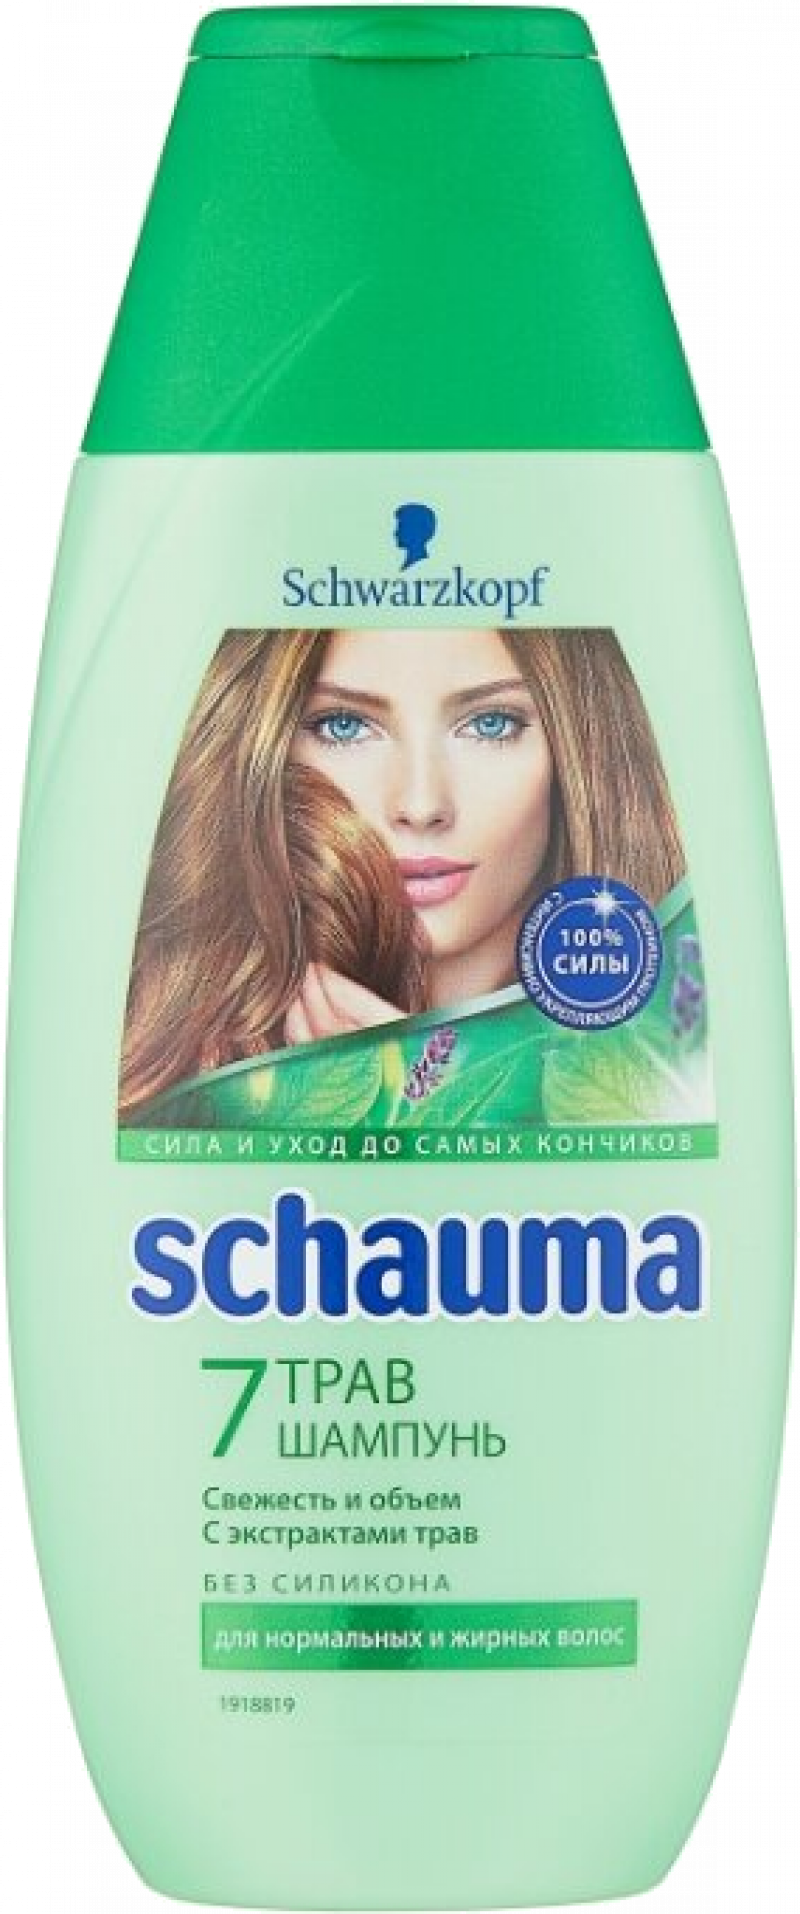 Шампунь ТМ Schauma 7 трав для нормальных и жирных волос 225мл